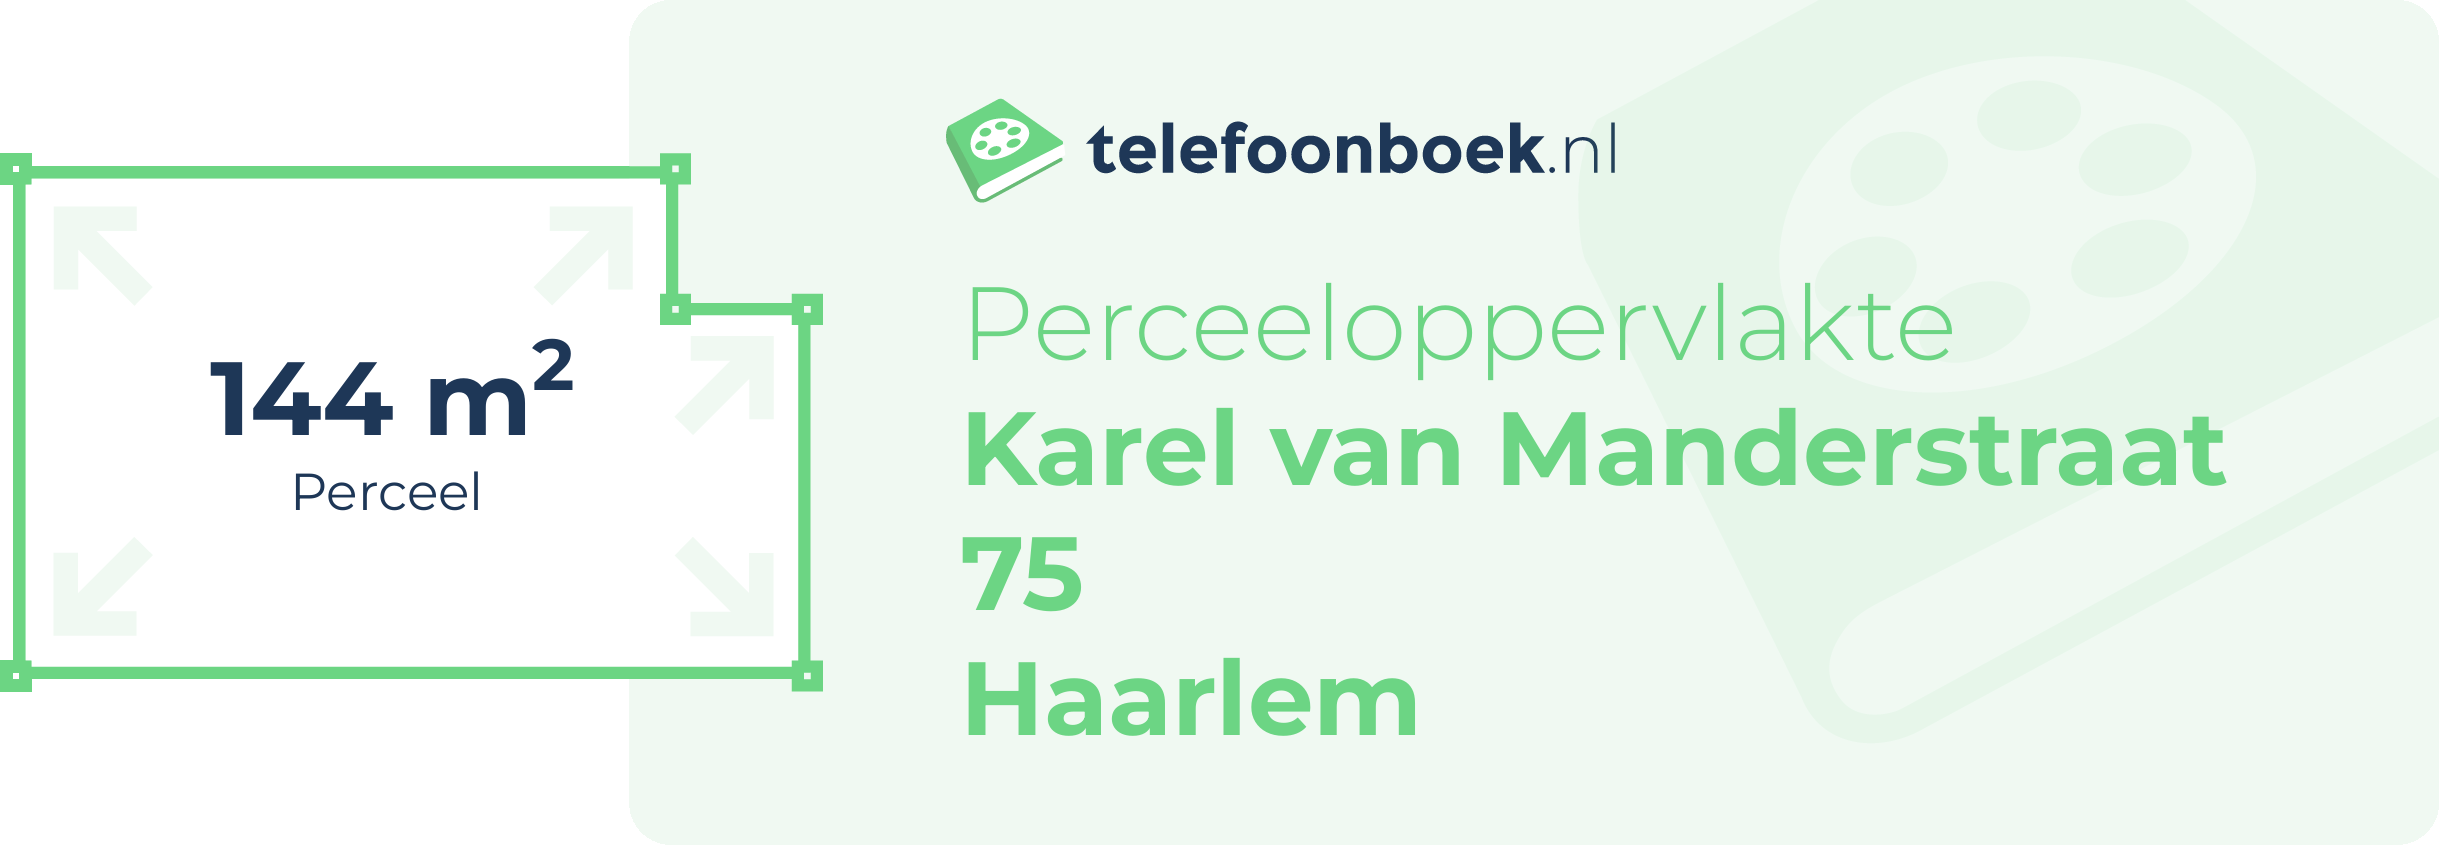 Perceeloppervlakte Karel Van Manderstraat 75 Haarlem